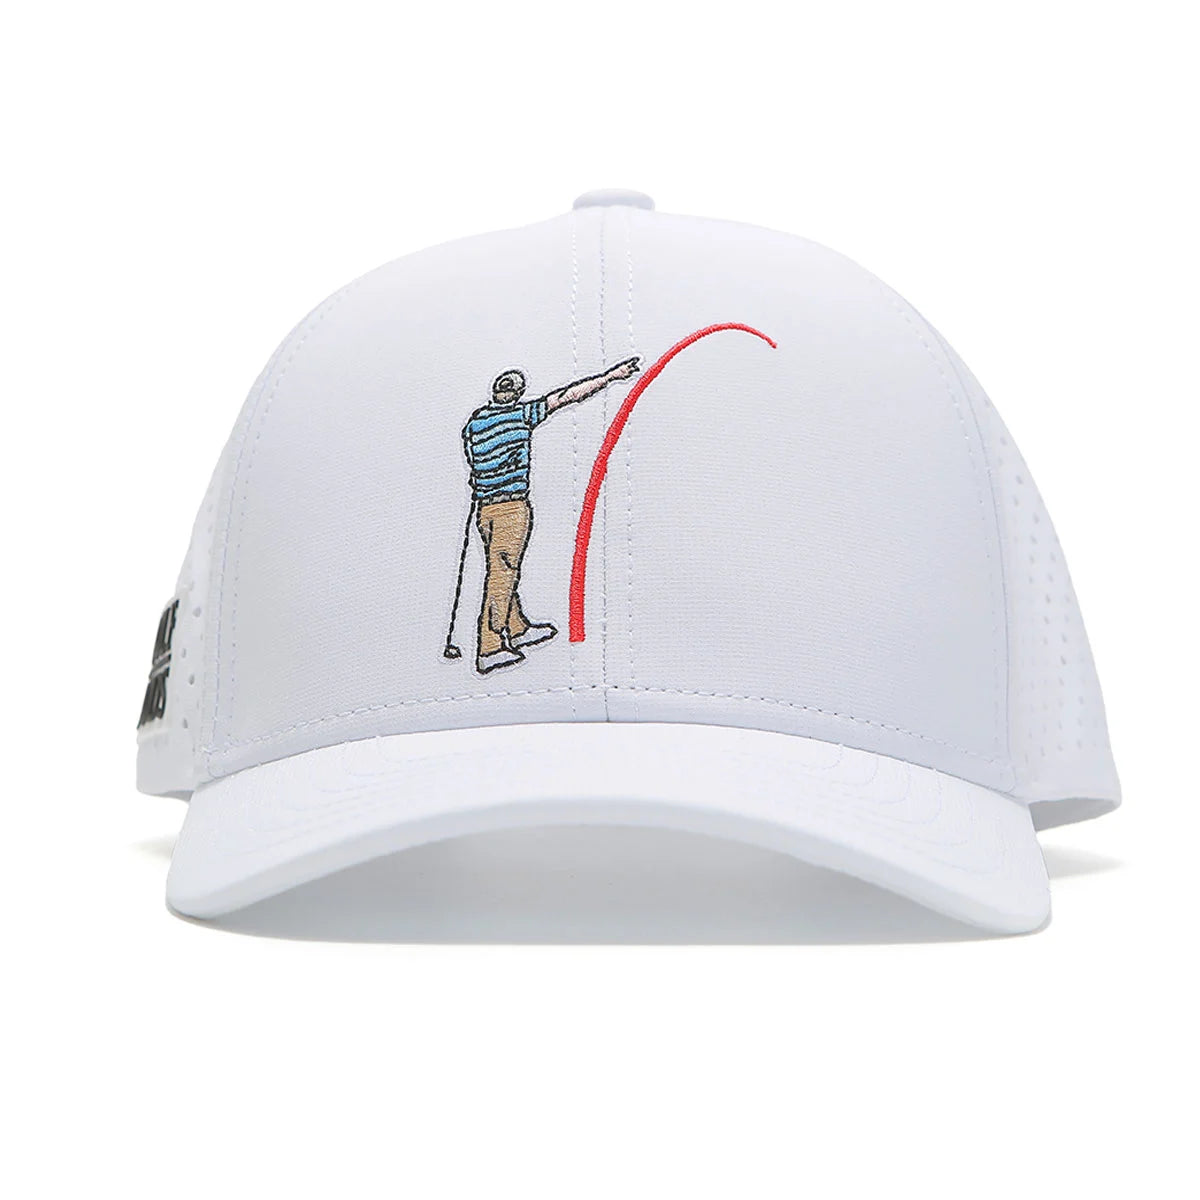 GOLF GODS Tour Pro Mad Slicer Golf Hat Curved Brim